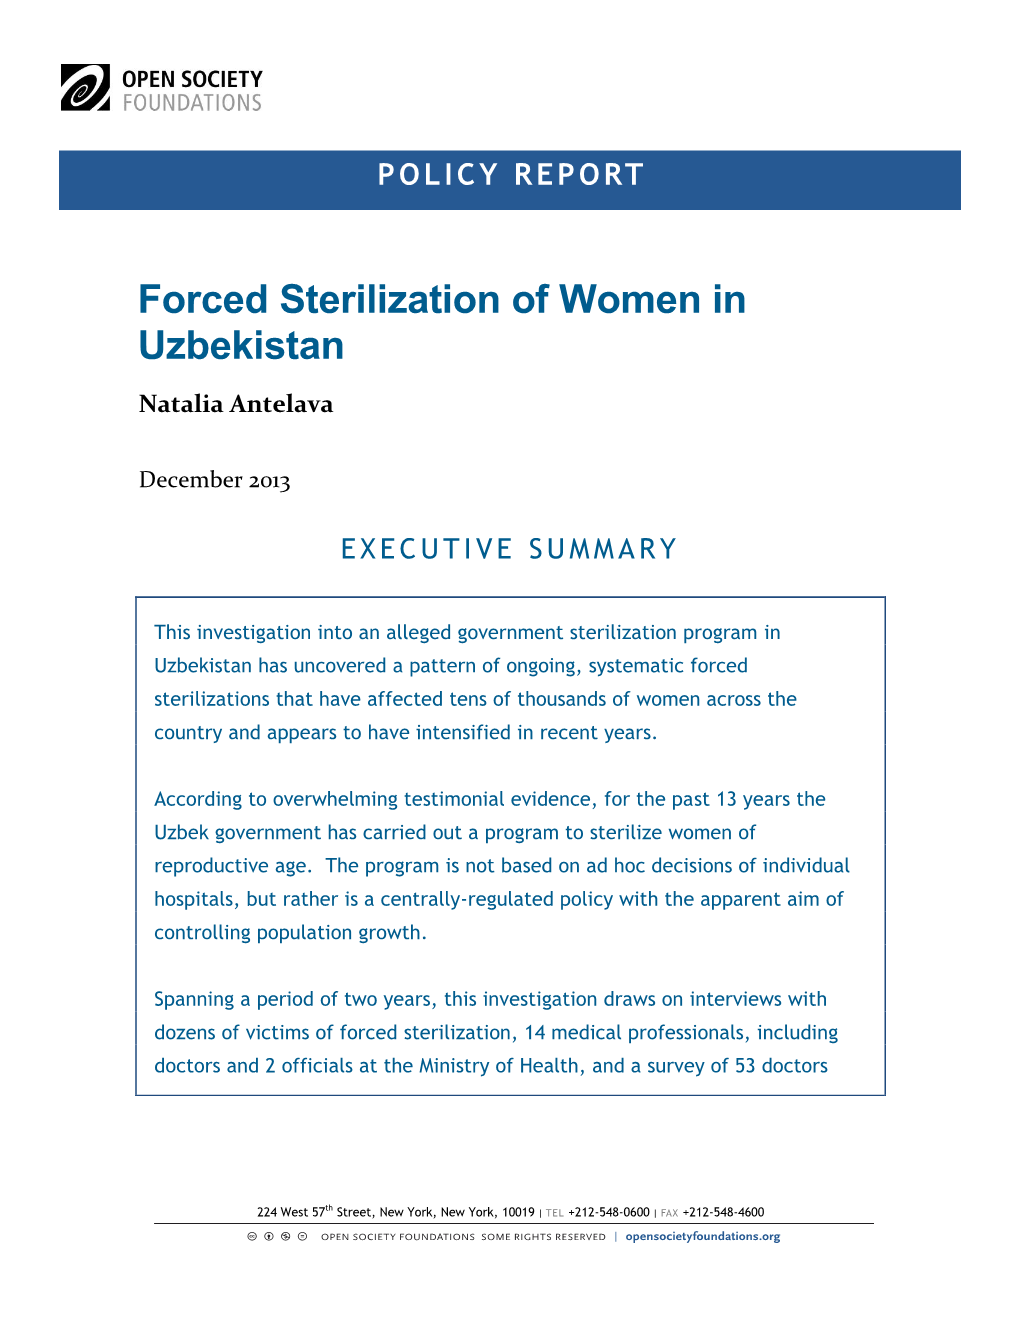 Forced Sterilization of Women in Uzbekistan